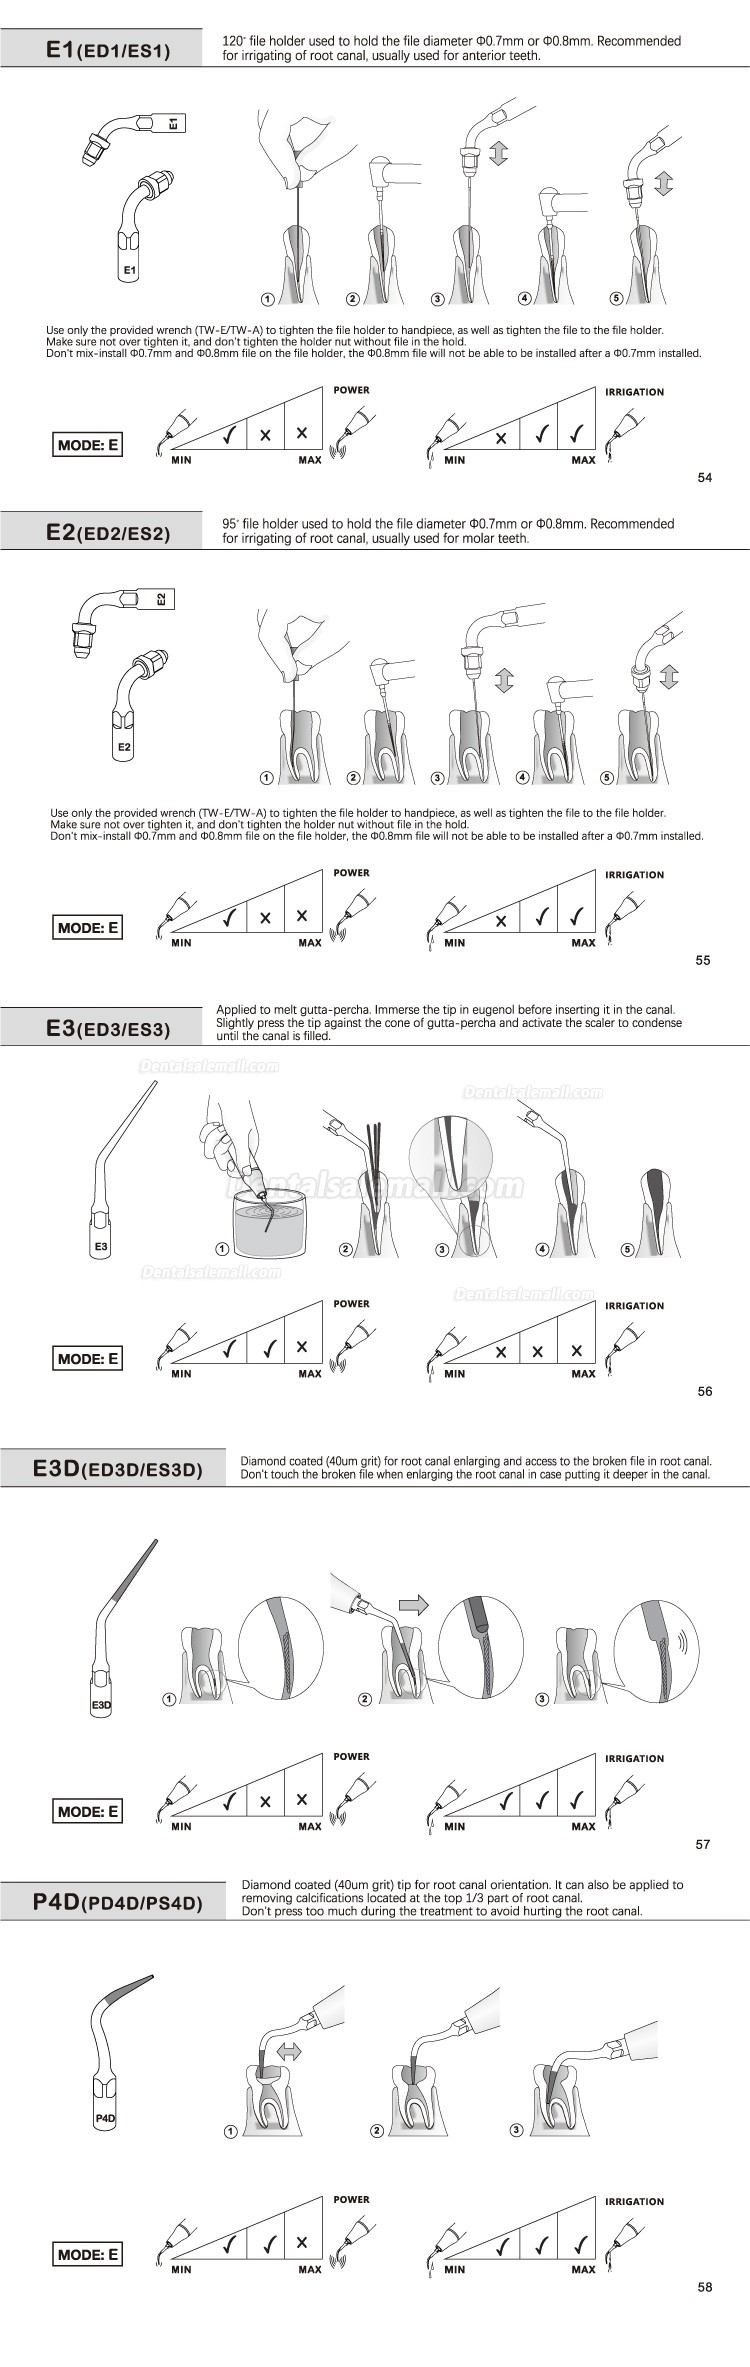 5Pcs Dental Scaler Implant Tips E1 E2 E3 E4 E4 E6 E7 E8 E9 E10 E11 E14 E15 for REFINE EMS MECTRON WOODPECKER